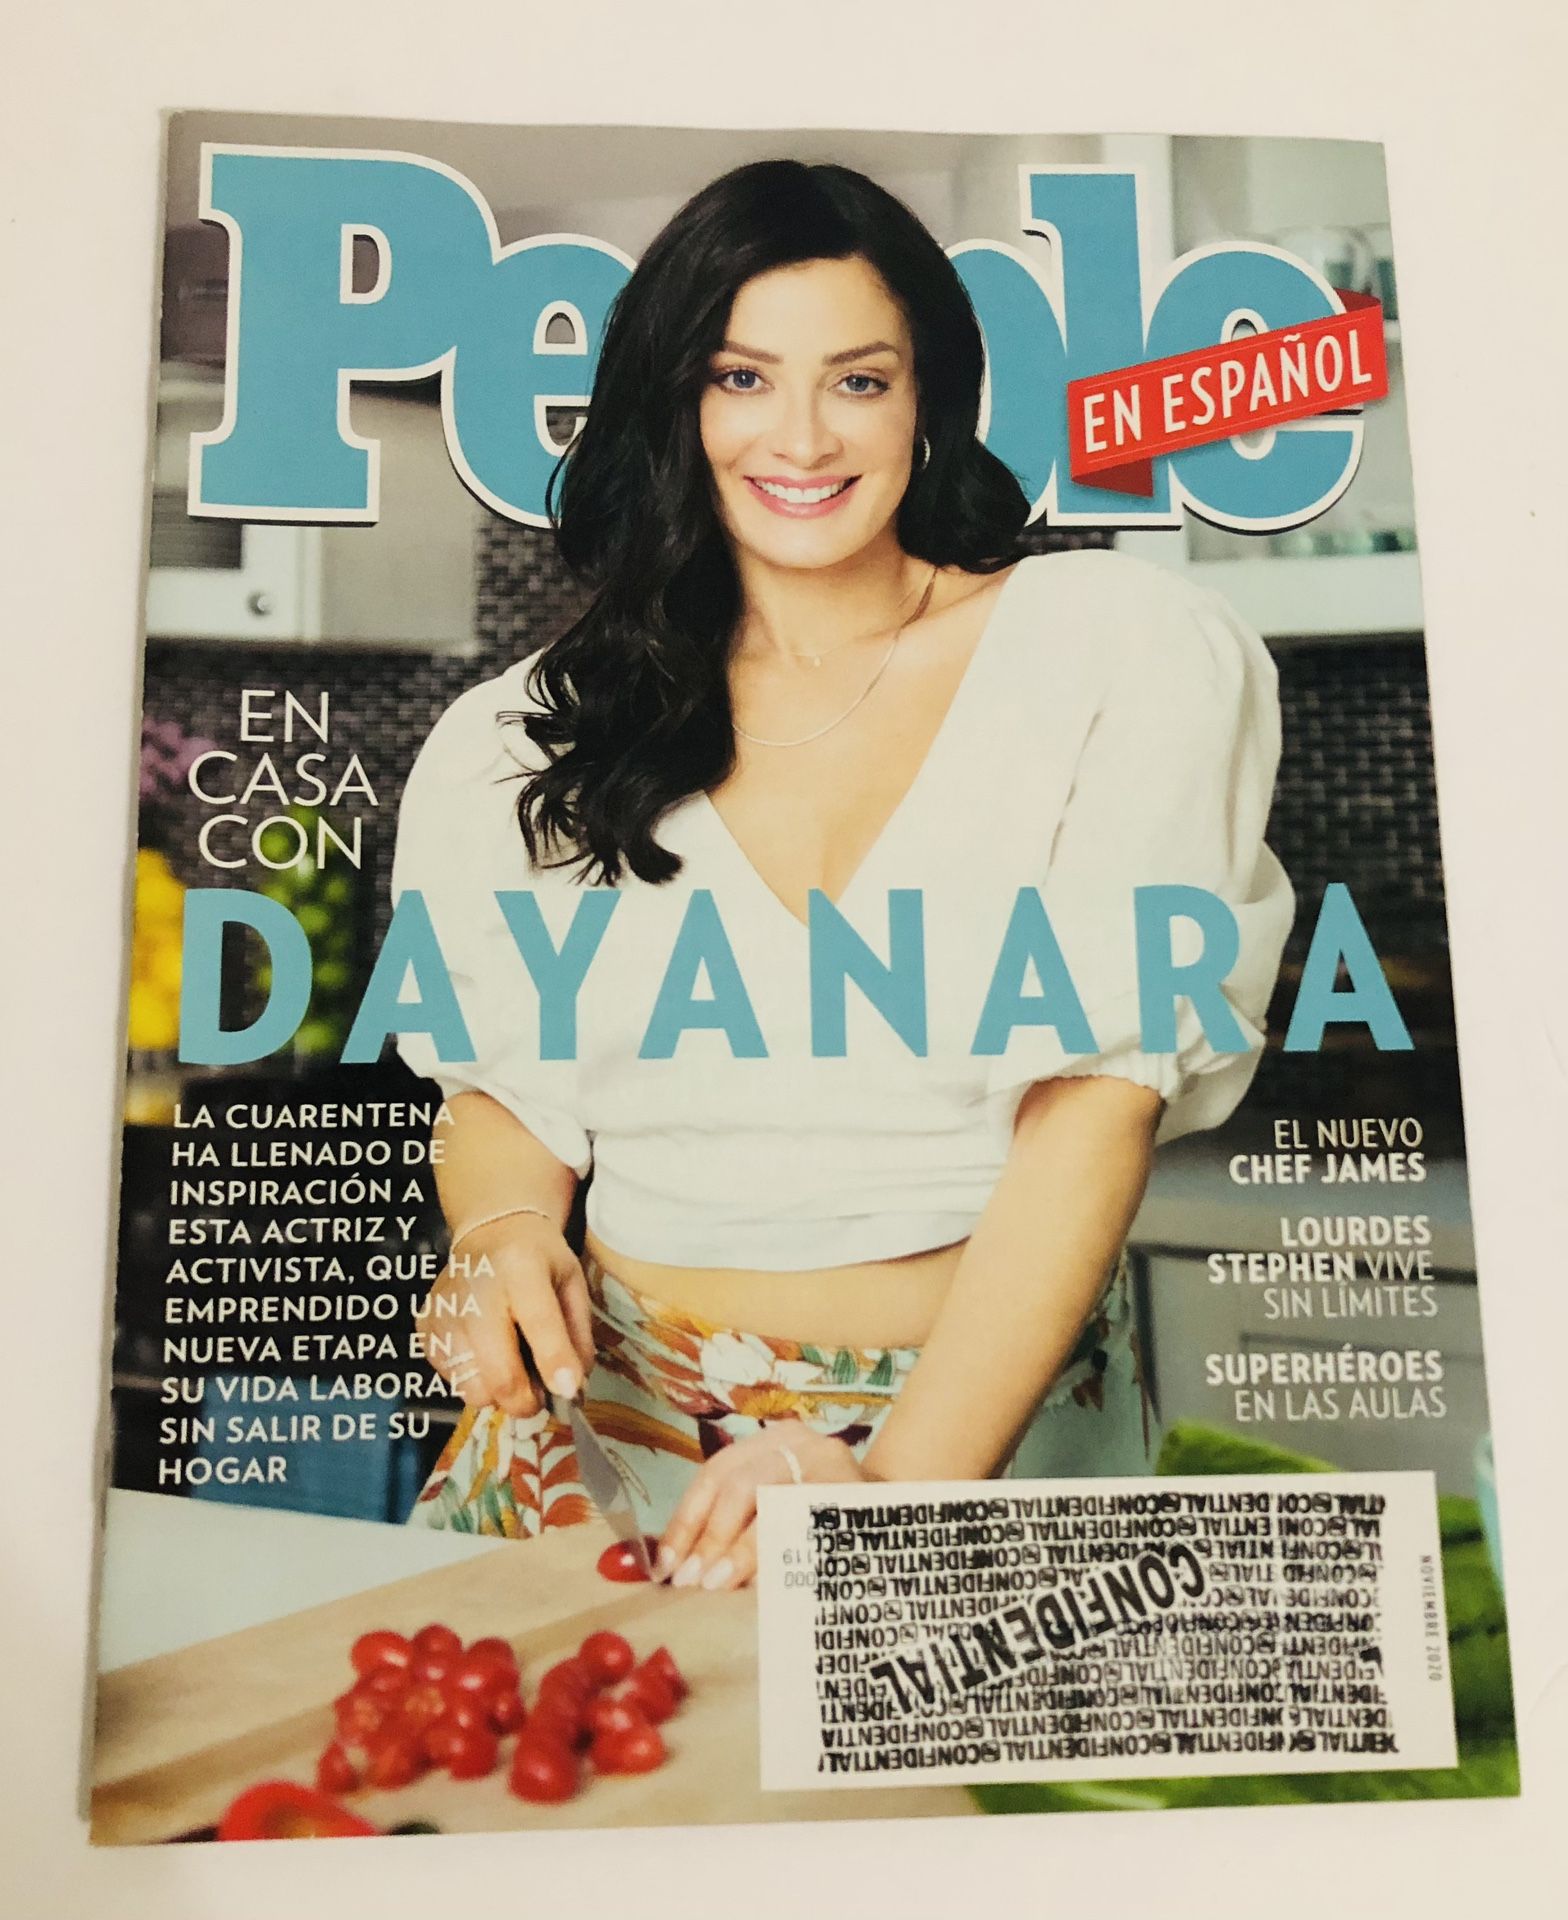 People Magazine en Espanol November Noviembre 2020 - Dayanara - Lourdes Stephen